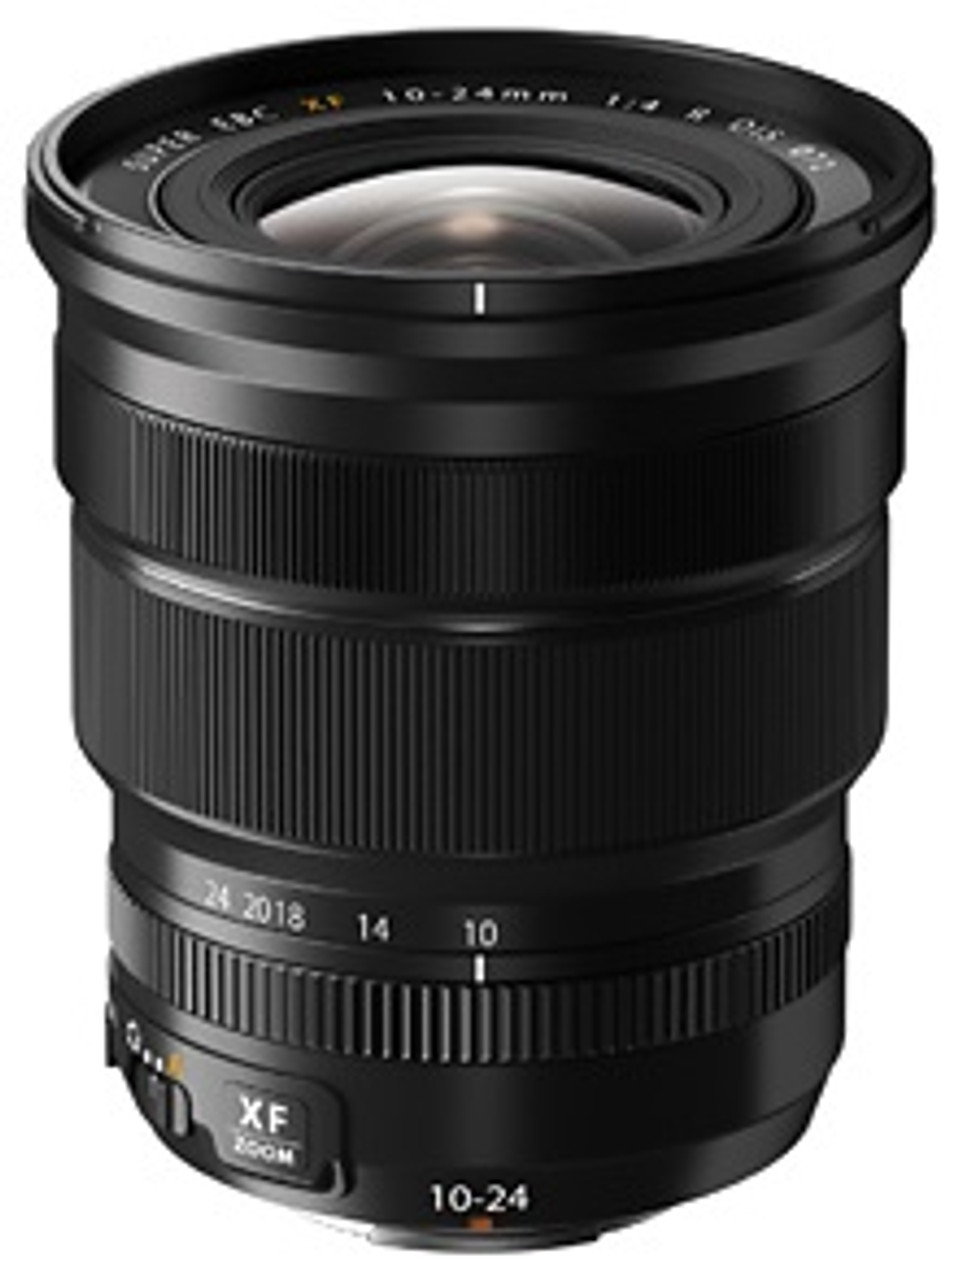 XF 10-24mm f/4 R OIS Lens